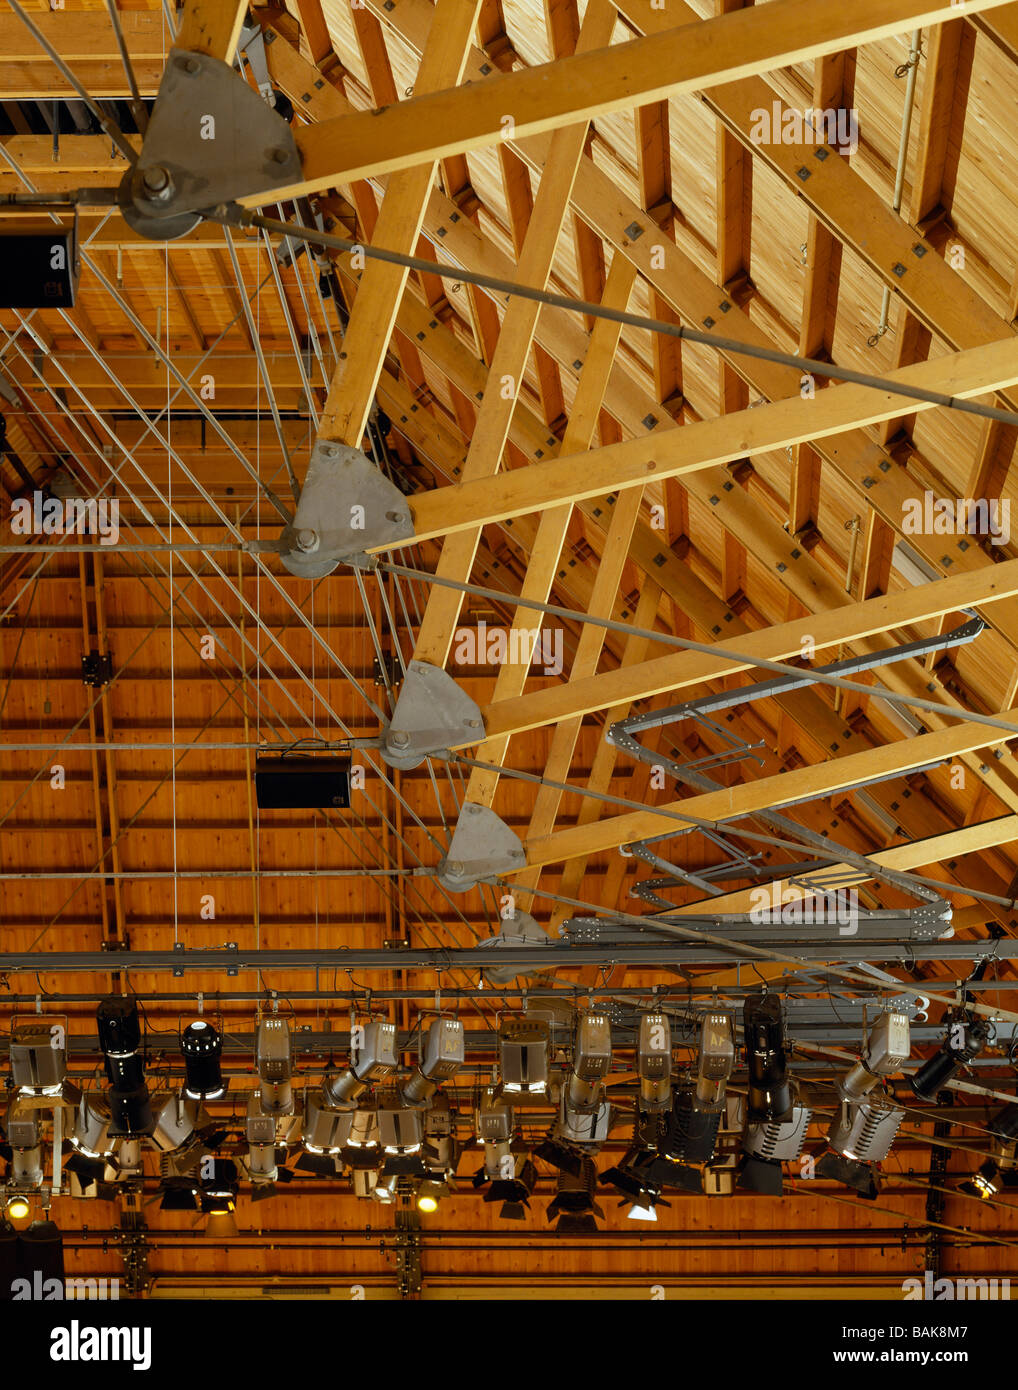 Snape Maltings concert Hall (Aldeburgh Produktionen) Detail Beleuchtung Rig  und Balken Stockfotografie - Alamy